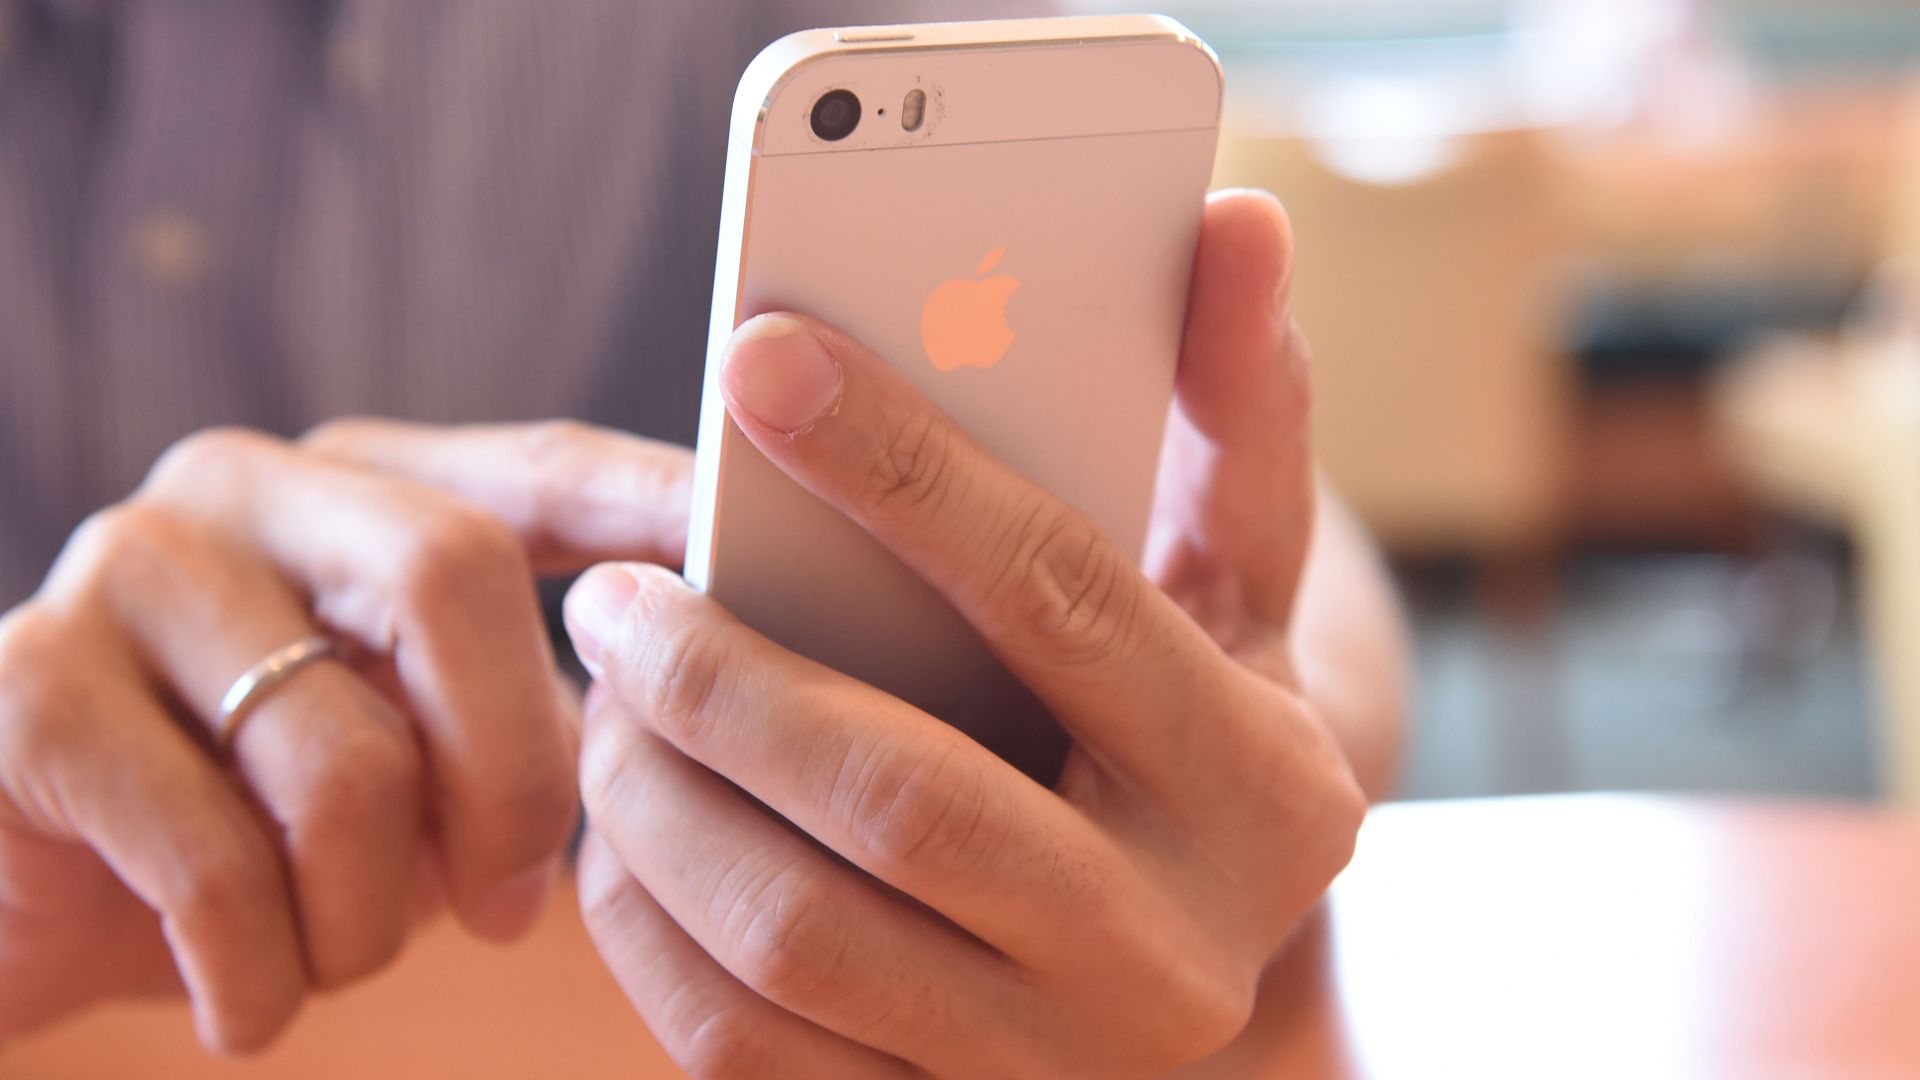 Епъл ограничи продажбите на Айфон до два на човек заради коронавируса